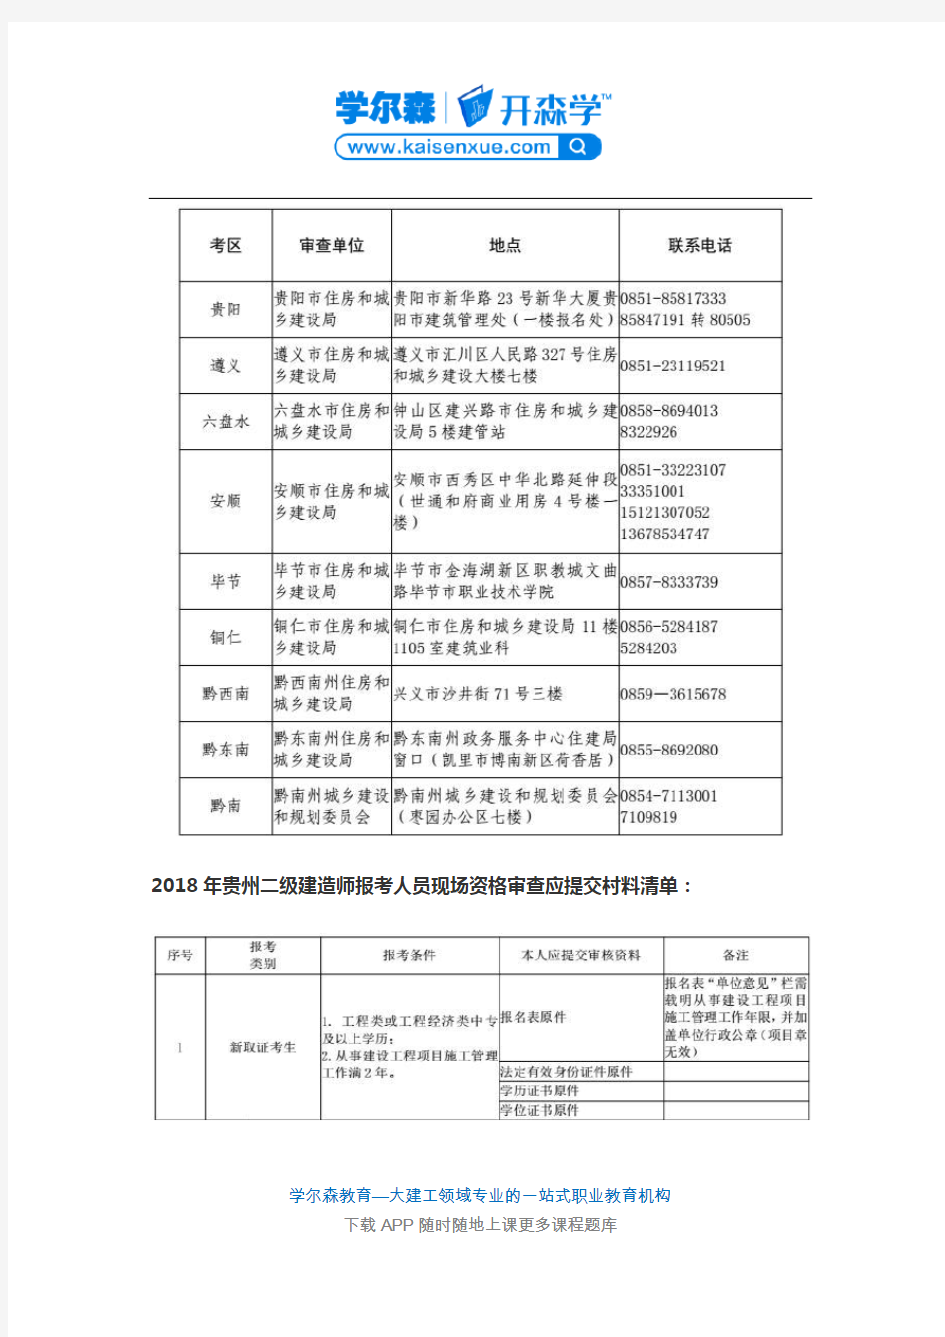 2018年贵州二级建造师报名现场审核时间及材料